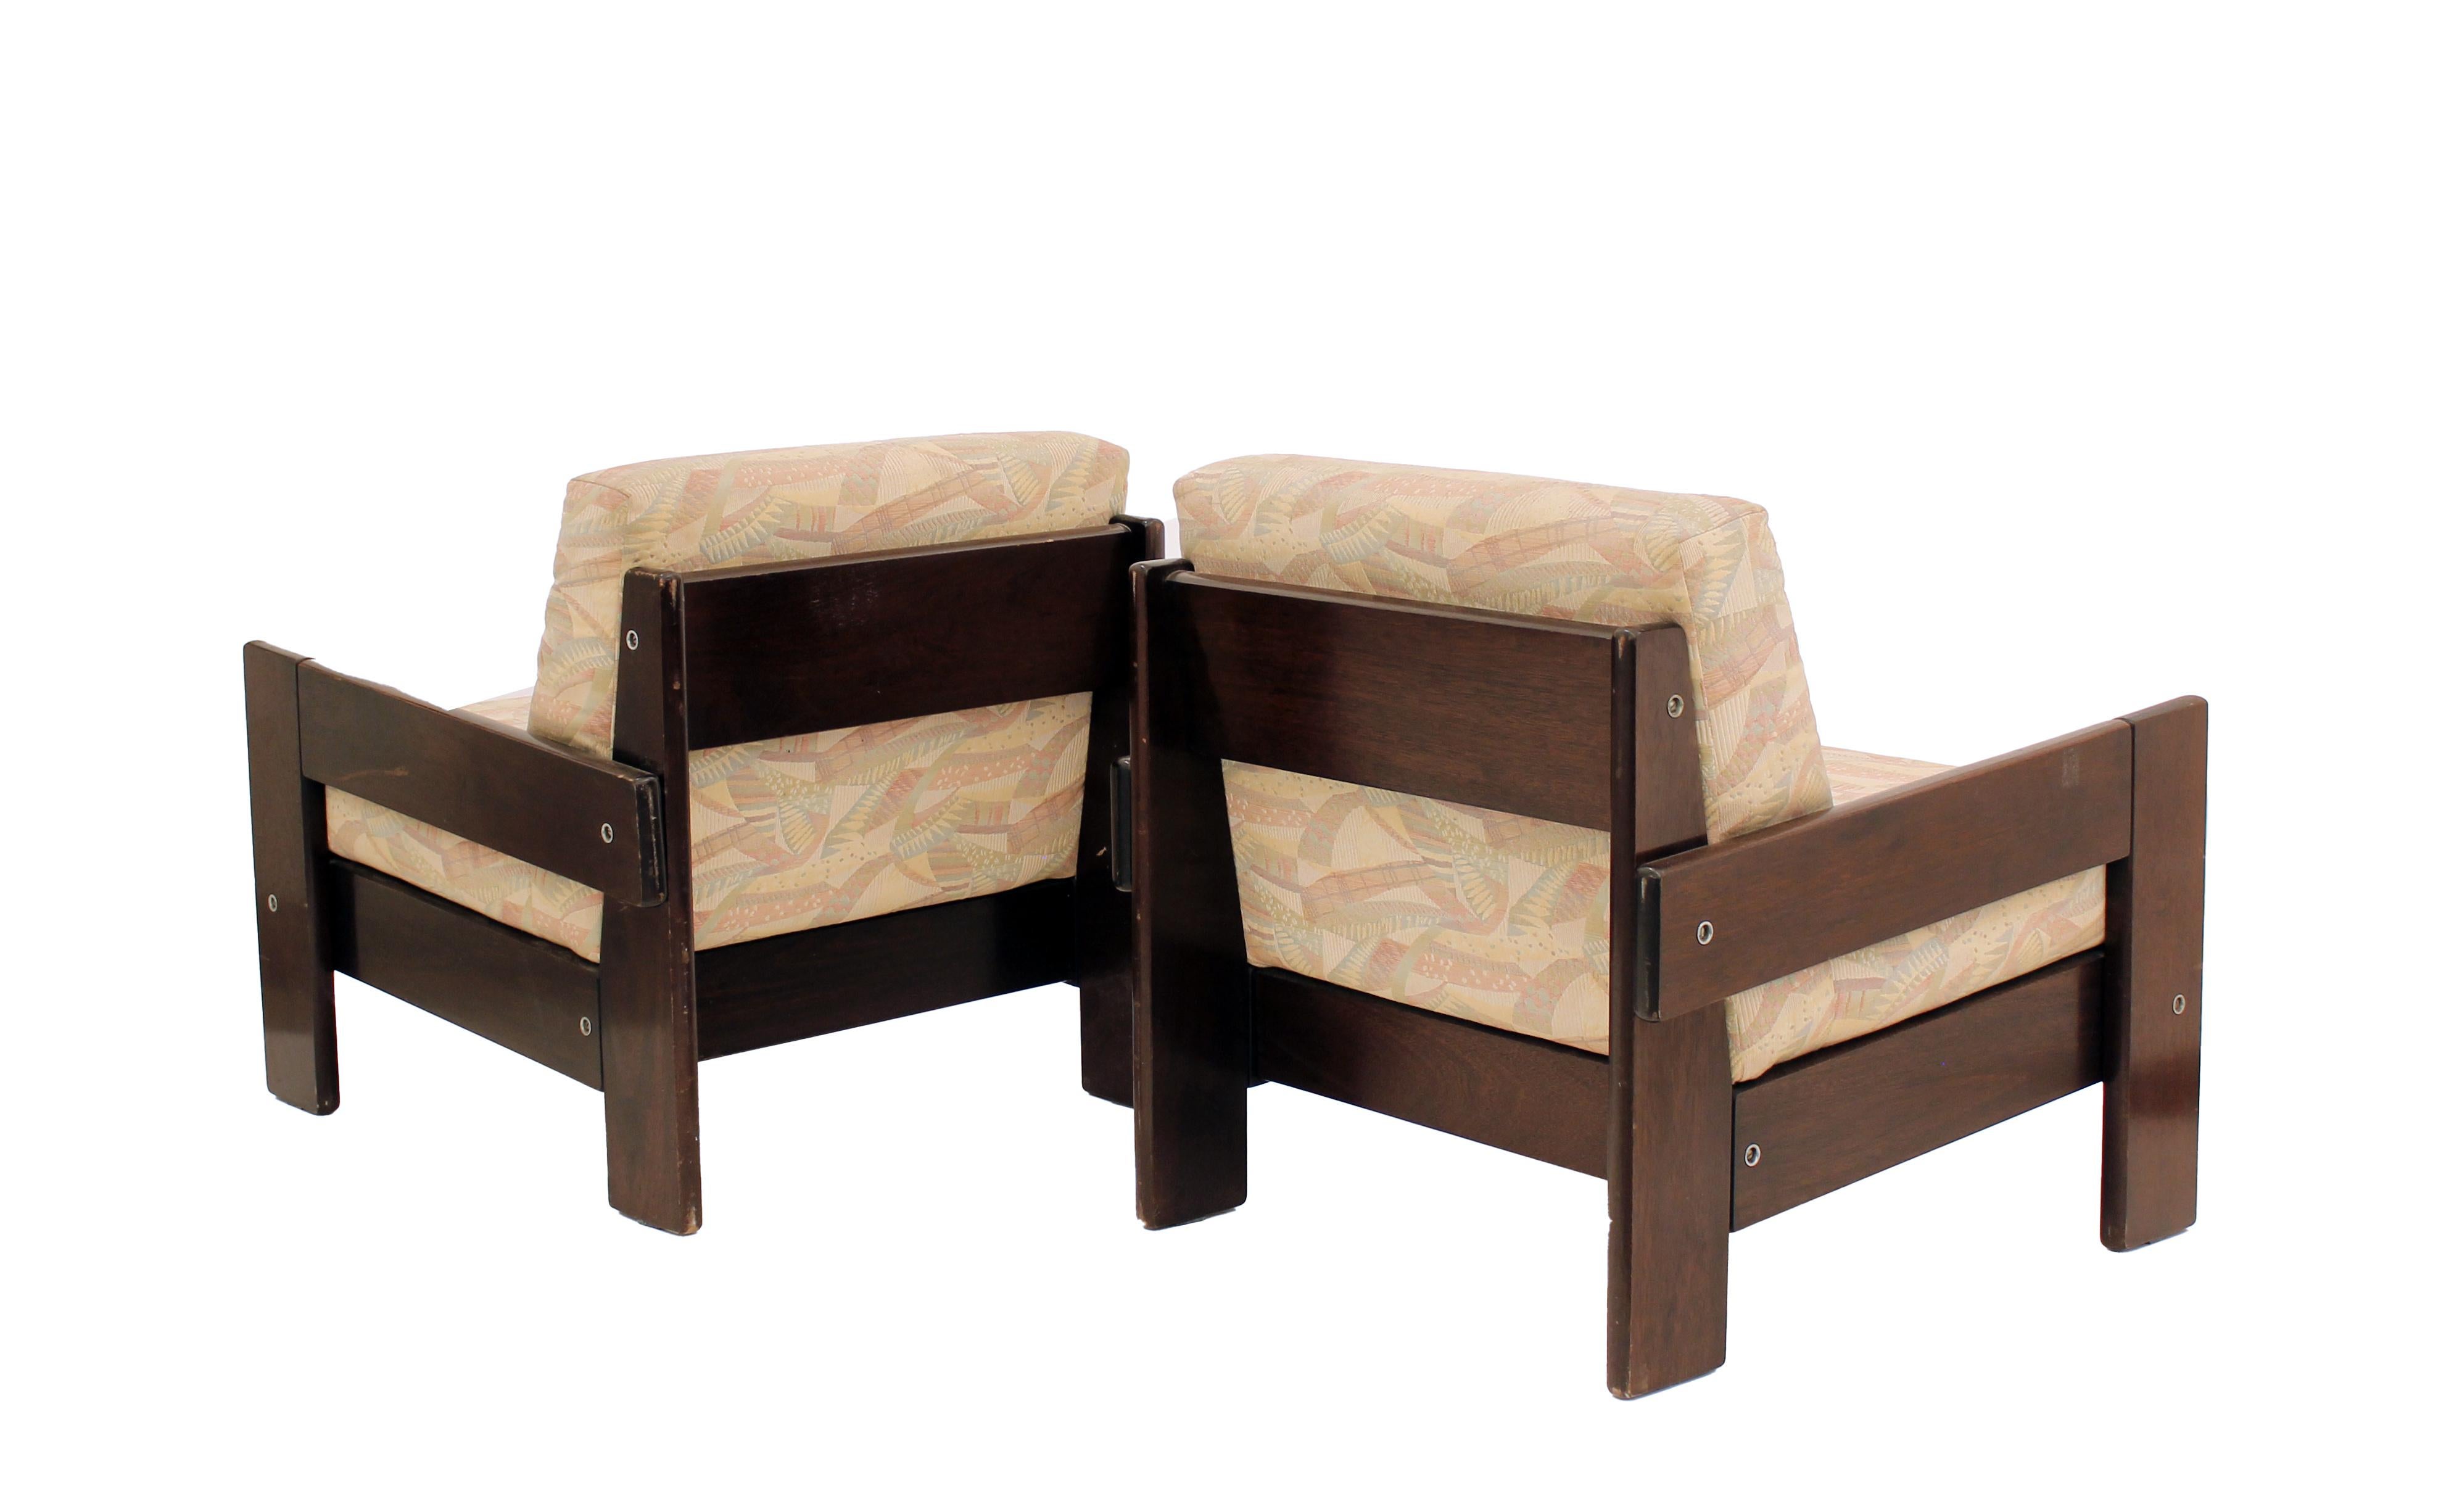 Paire de fauteuils conçus par la très importante figure moderniste brésilienne Geraldo De Barros qui était un artiste et un designer de meubles.  Ces chaises utilitaires ne sont pas seulement belles, elles sont aussi extrêmement confortables. 

En